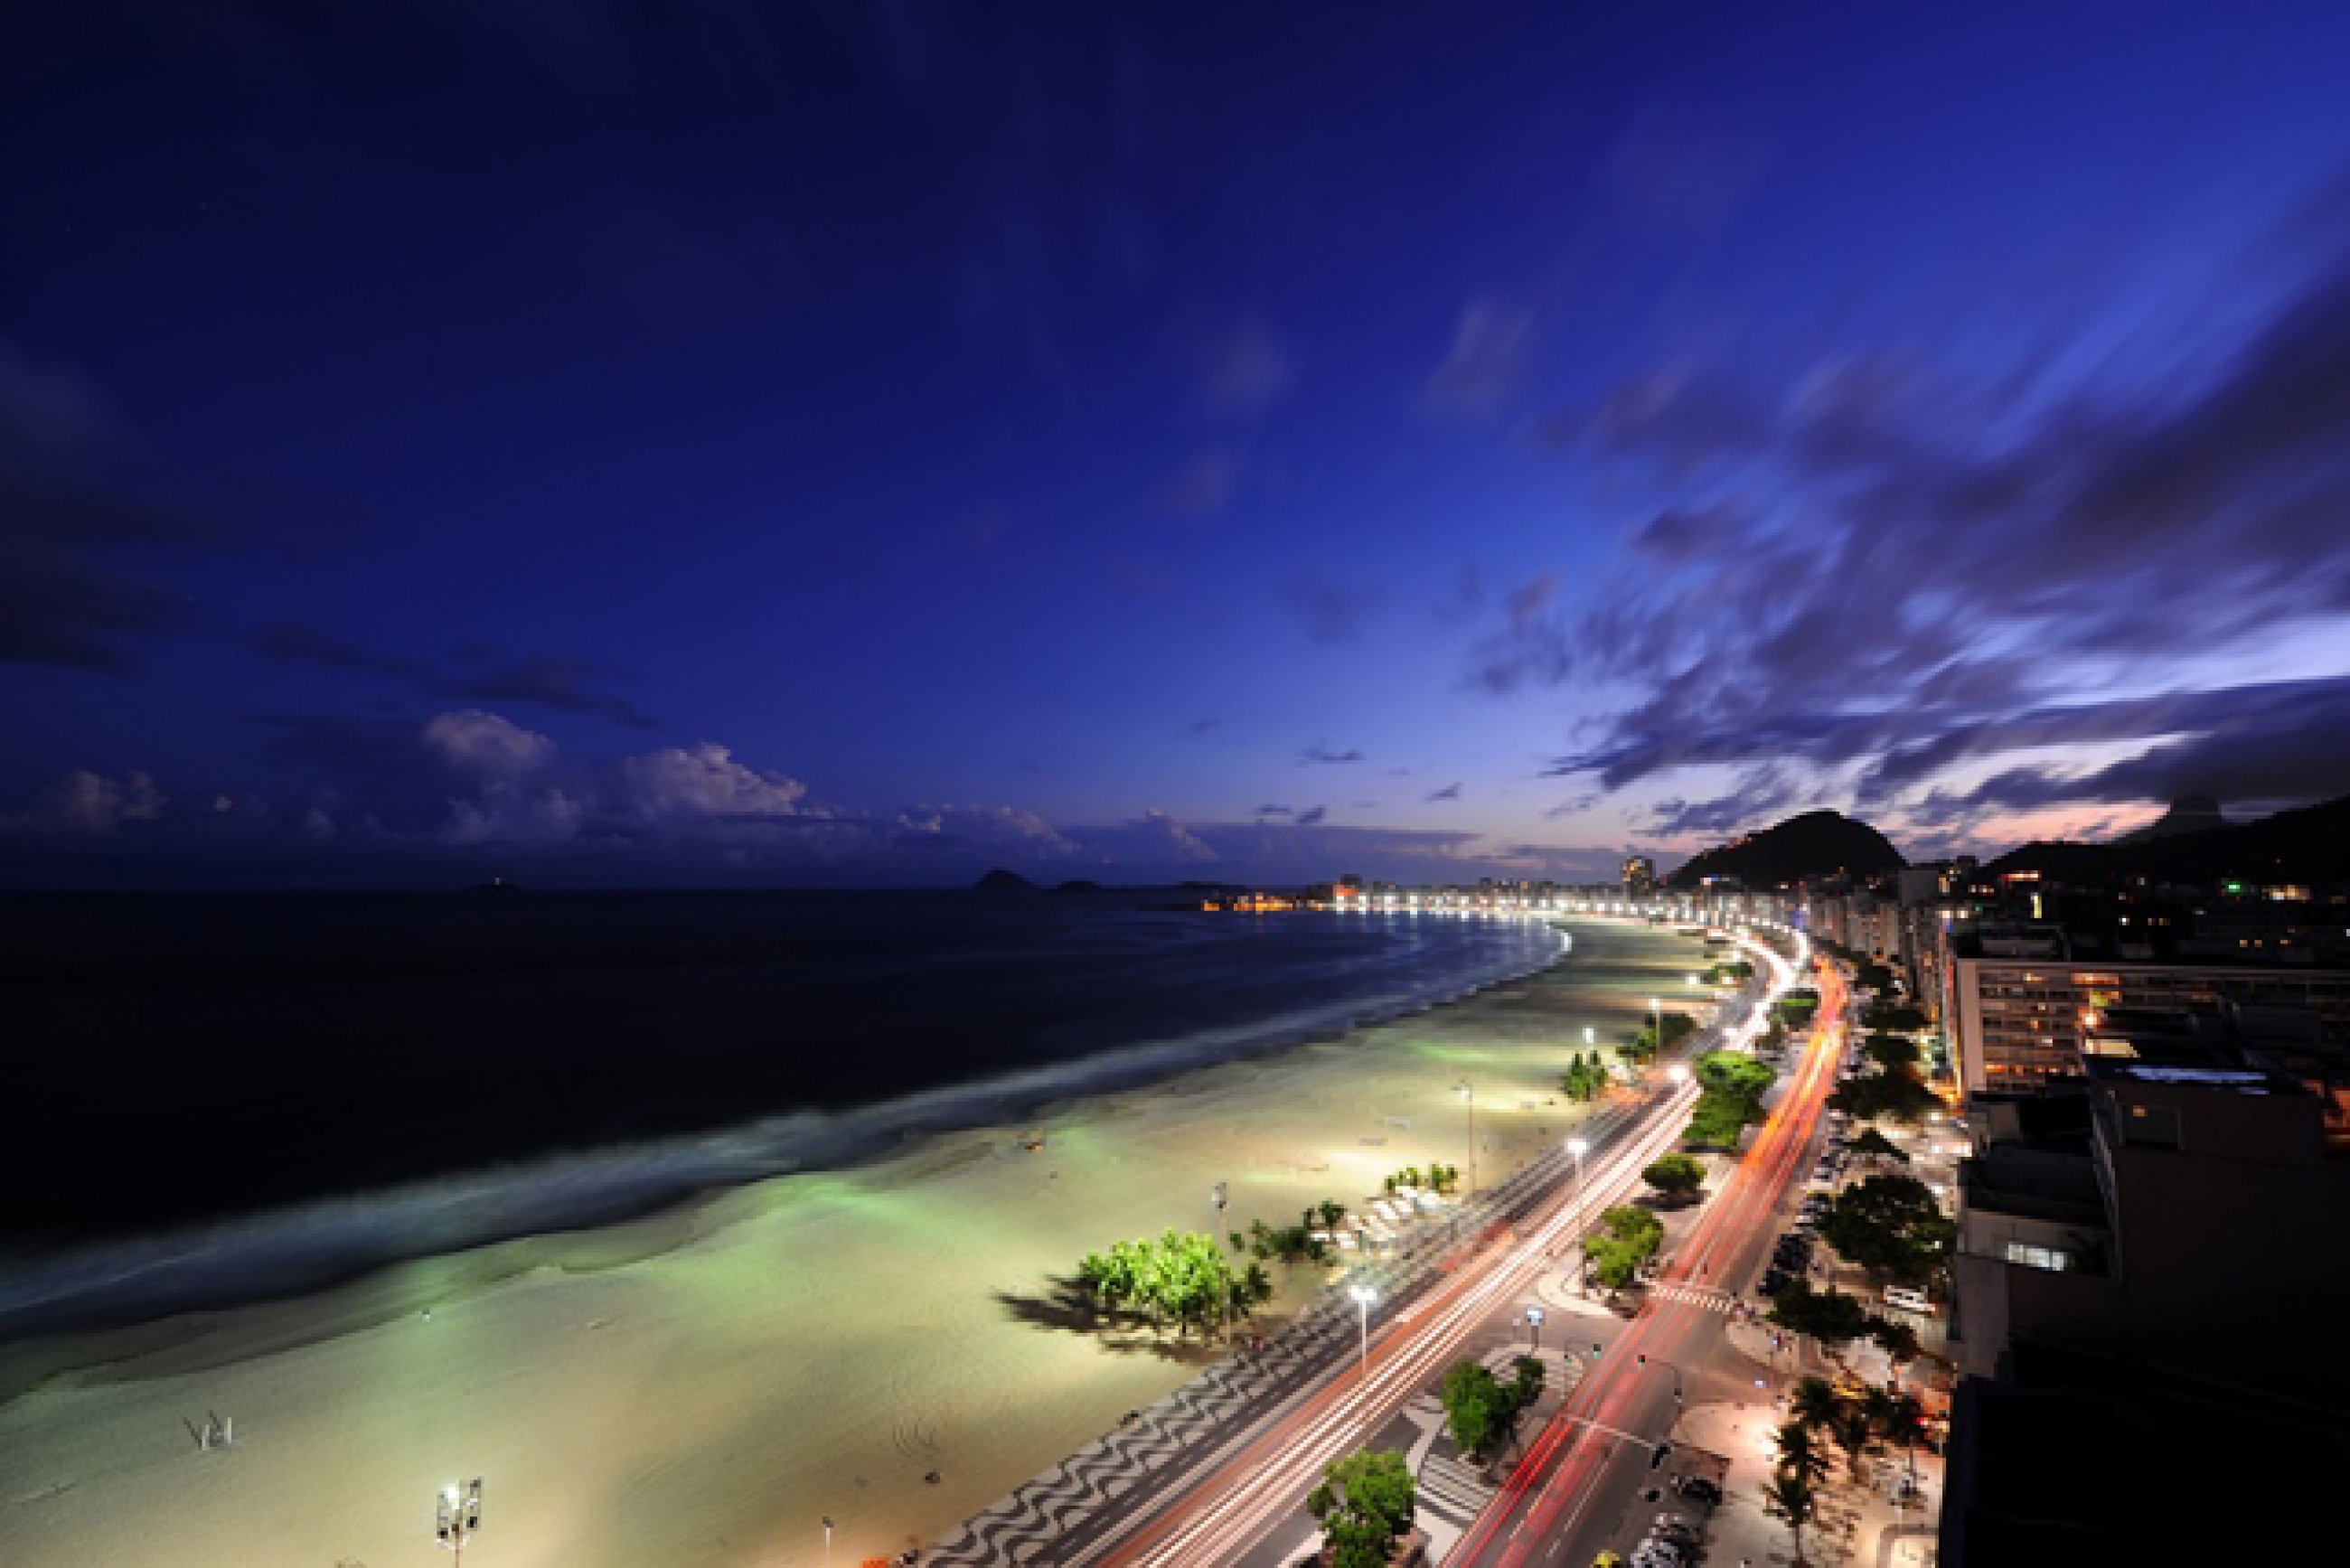 https://bubo.sk/uploads/galleries/7430/copacabana-rooftop-view-1-.jpg